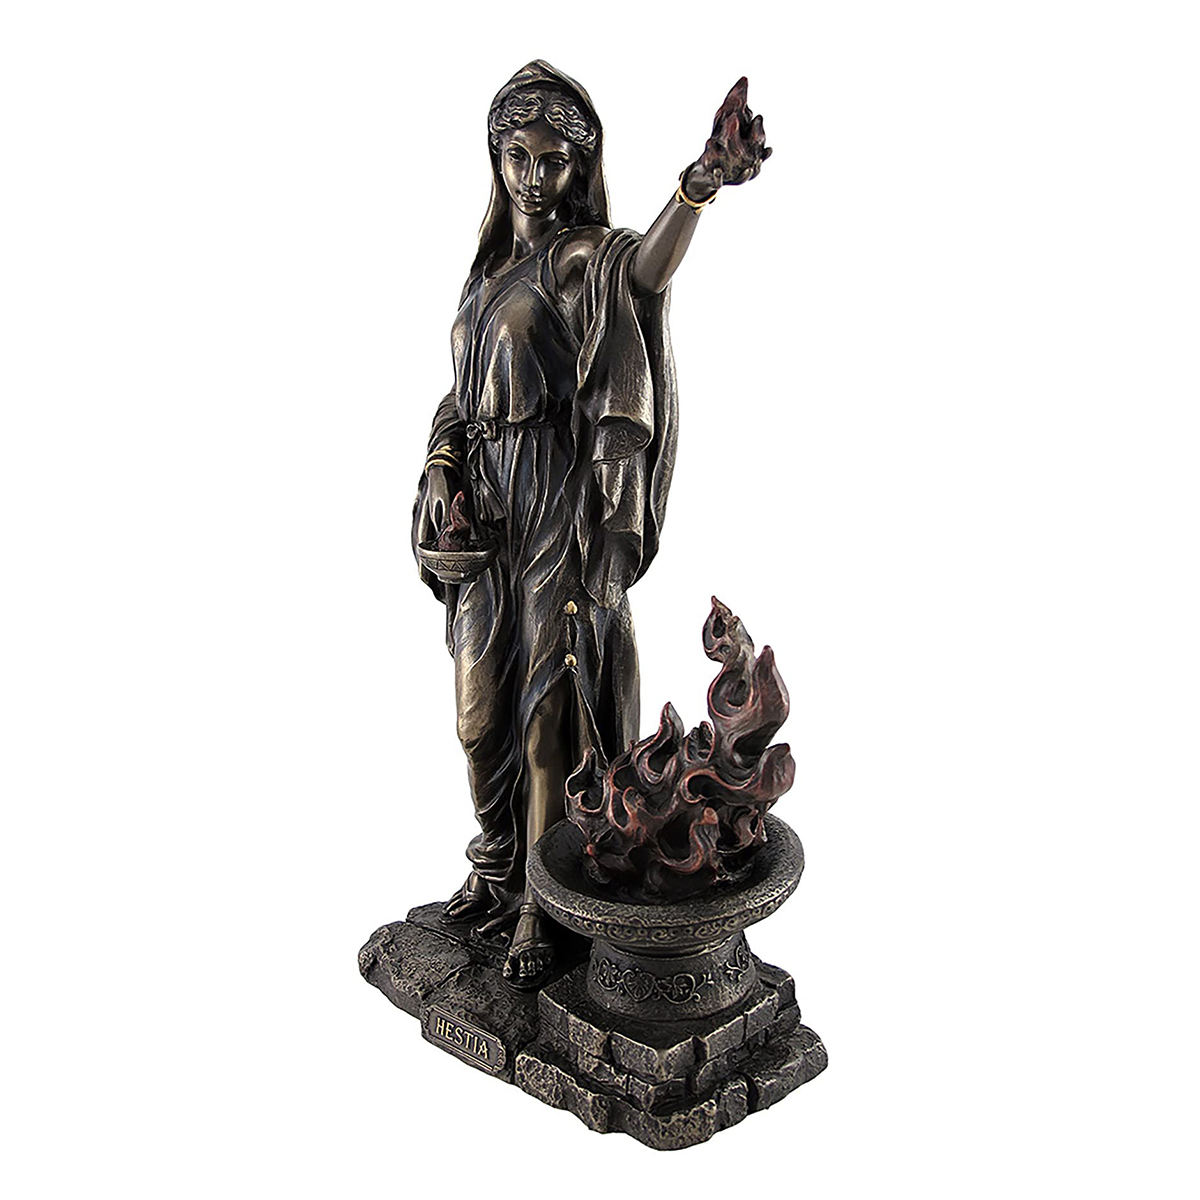 Hestia Goddess Statue